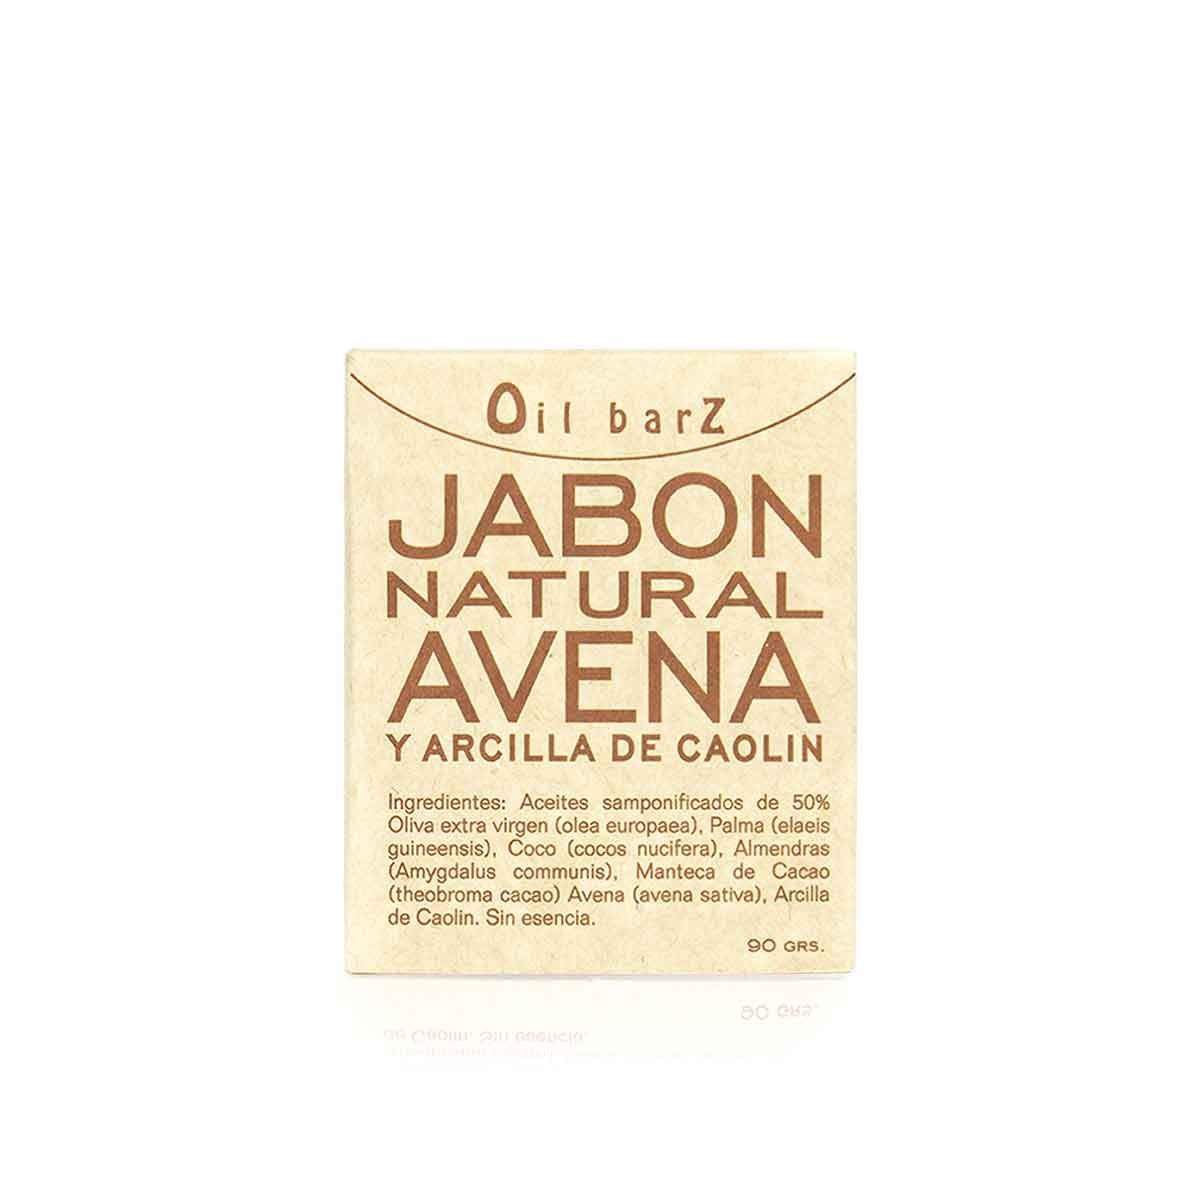 Jabon Natural Avena y Arcilla de Caolin Oil Barz